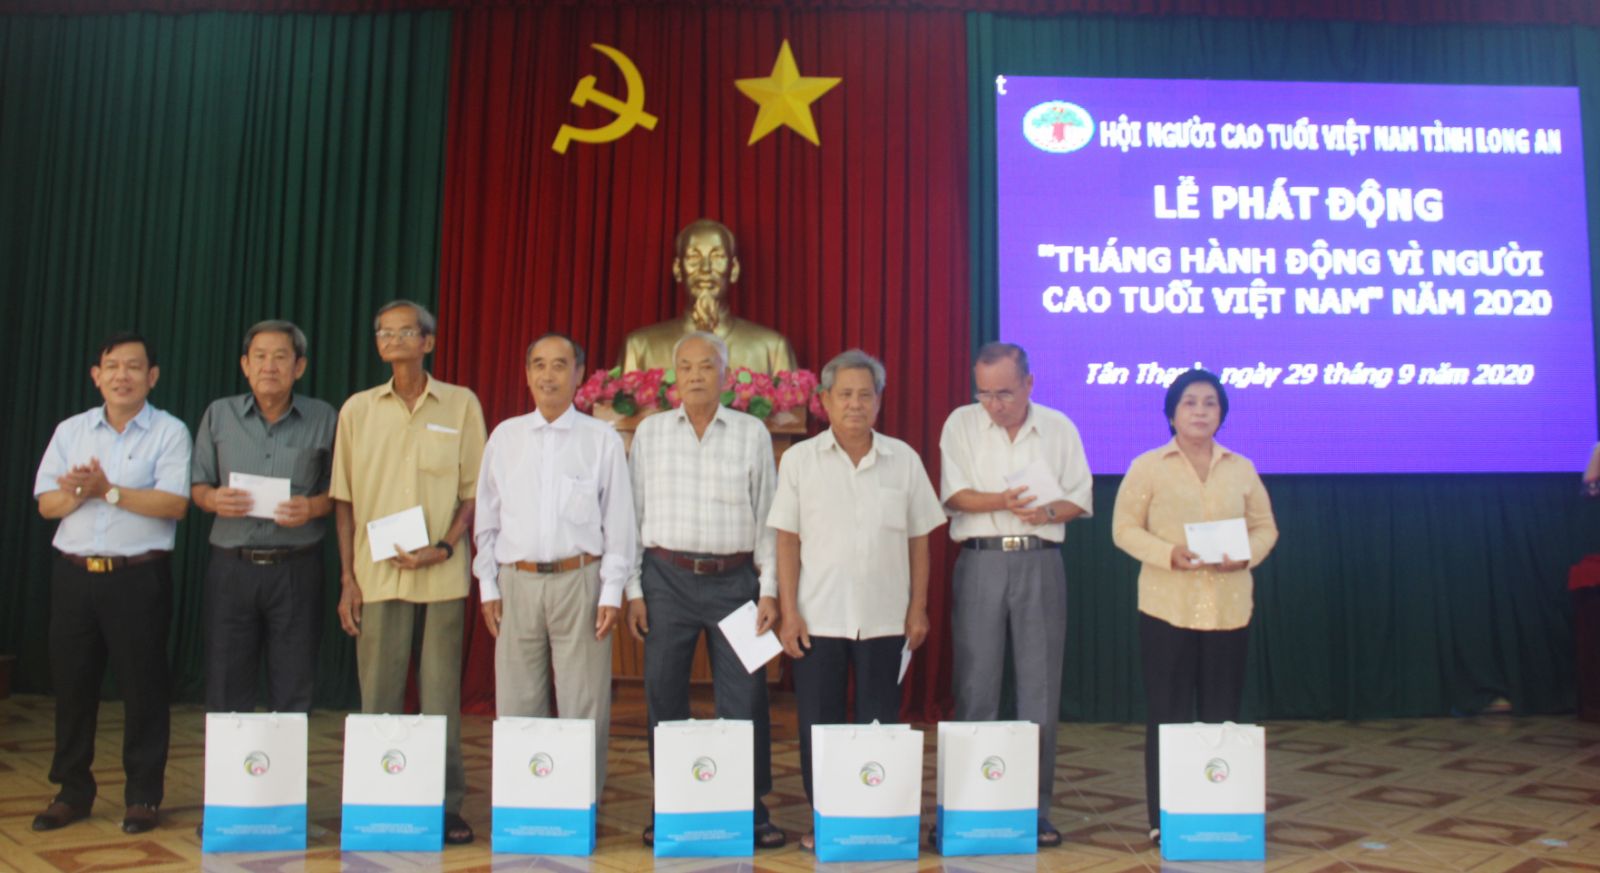 Hưởng ứng “Tháng hành động vì người cao tuổi”, Ban Đại diện Hội NCT tỉnh đã trao tặng 20 suất quà cho các hội viên NCT tiêu biểu trên địa bàn huyện Tân Thạnh